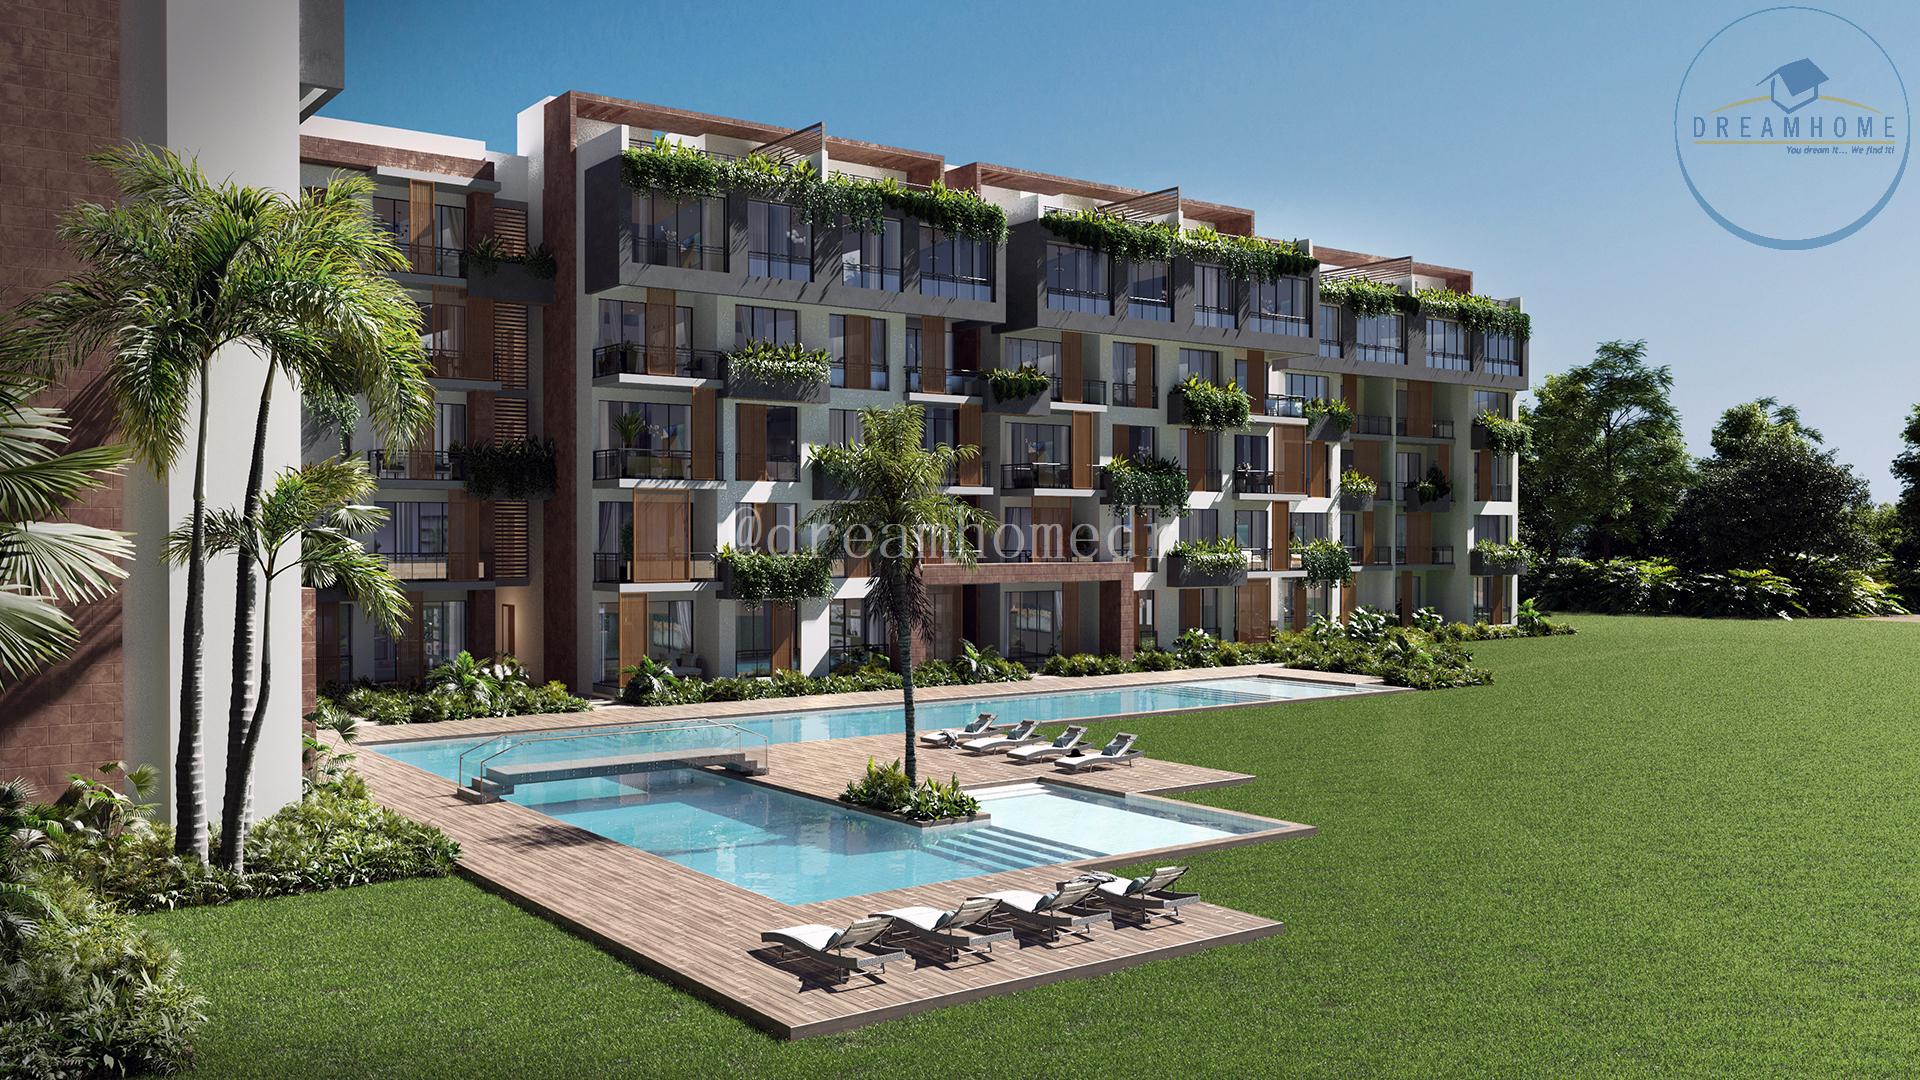 apartamentos - El lugar perfecto para vivir tus sueños en Punta Cana ID 3326 0